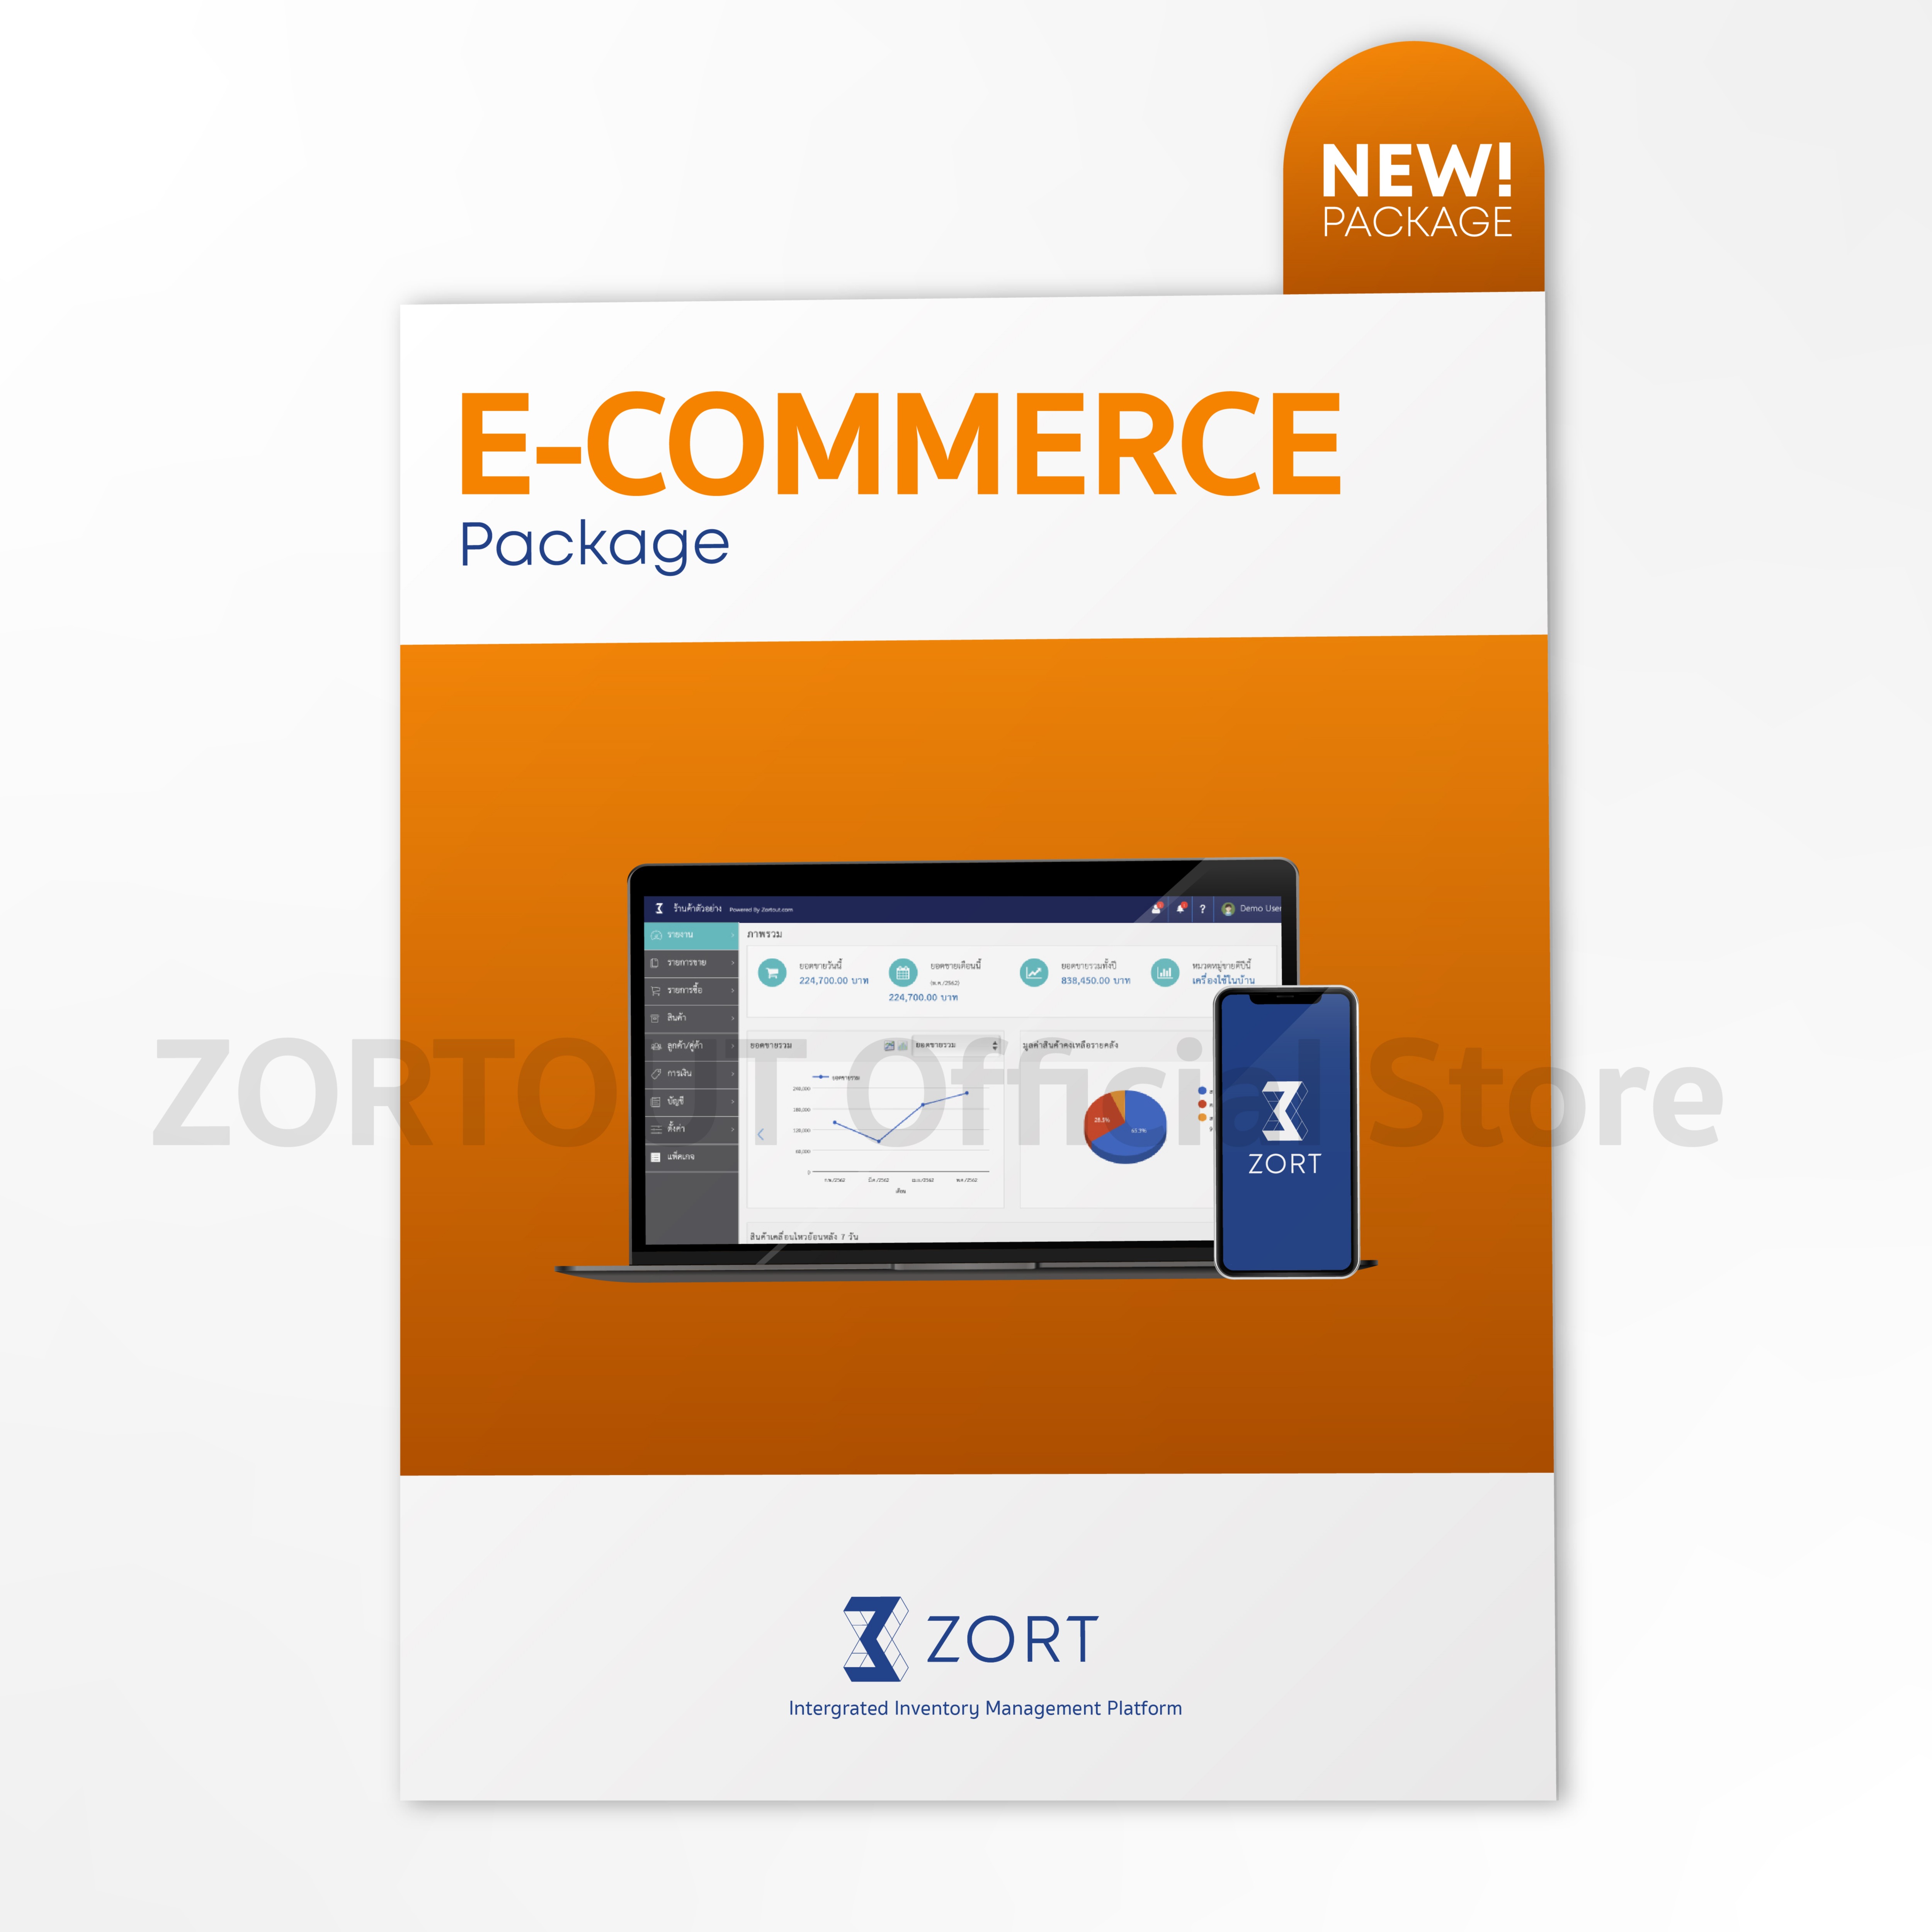 ZORT eCommerce แพ็กเกจสำหรับร้านค้าที่มีช่องทางการขายหลายช่องทาง และต้องการตัวช่วยในการจัดการออเดอร์ในที่เดียว